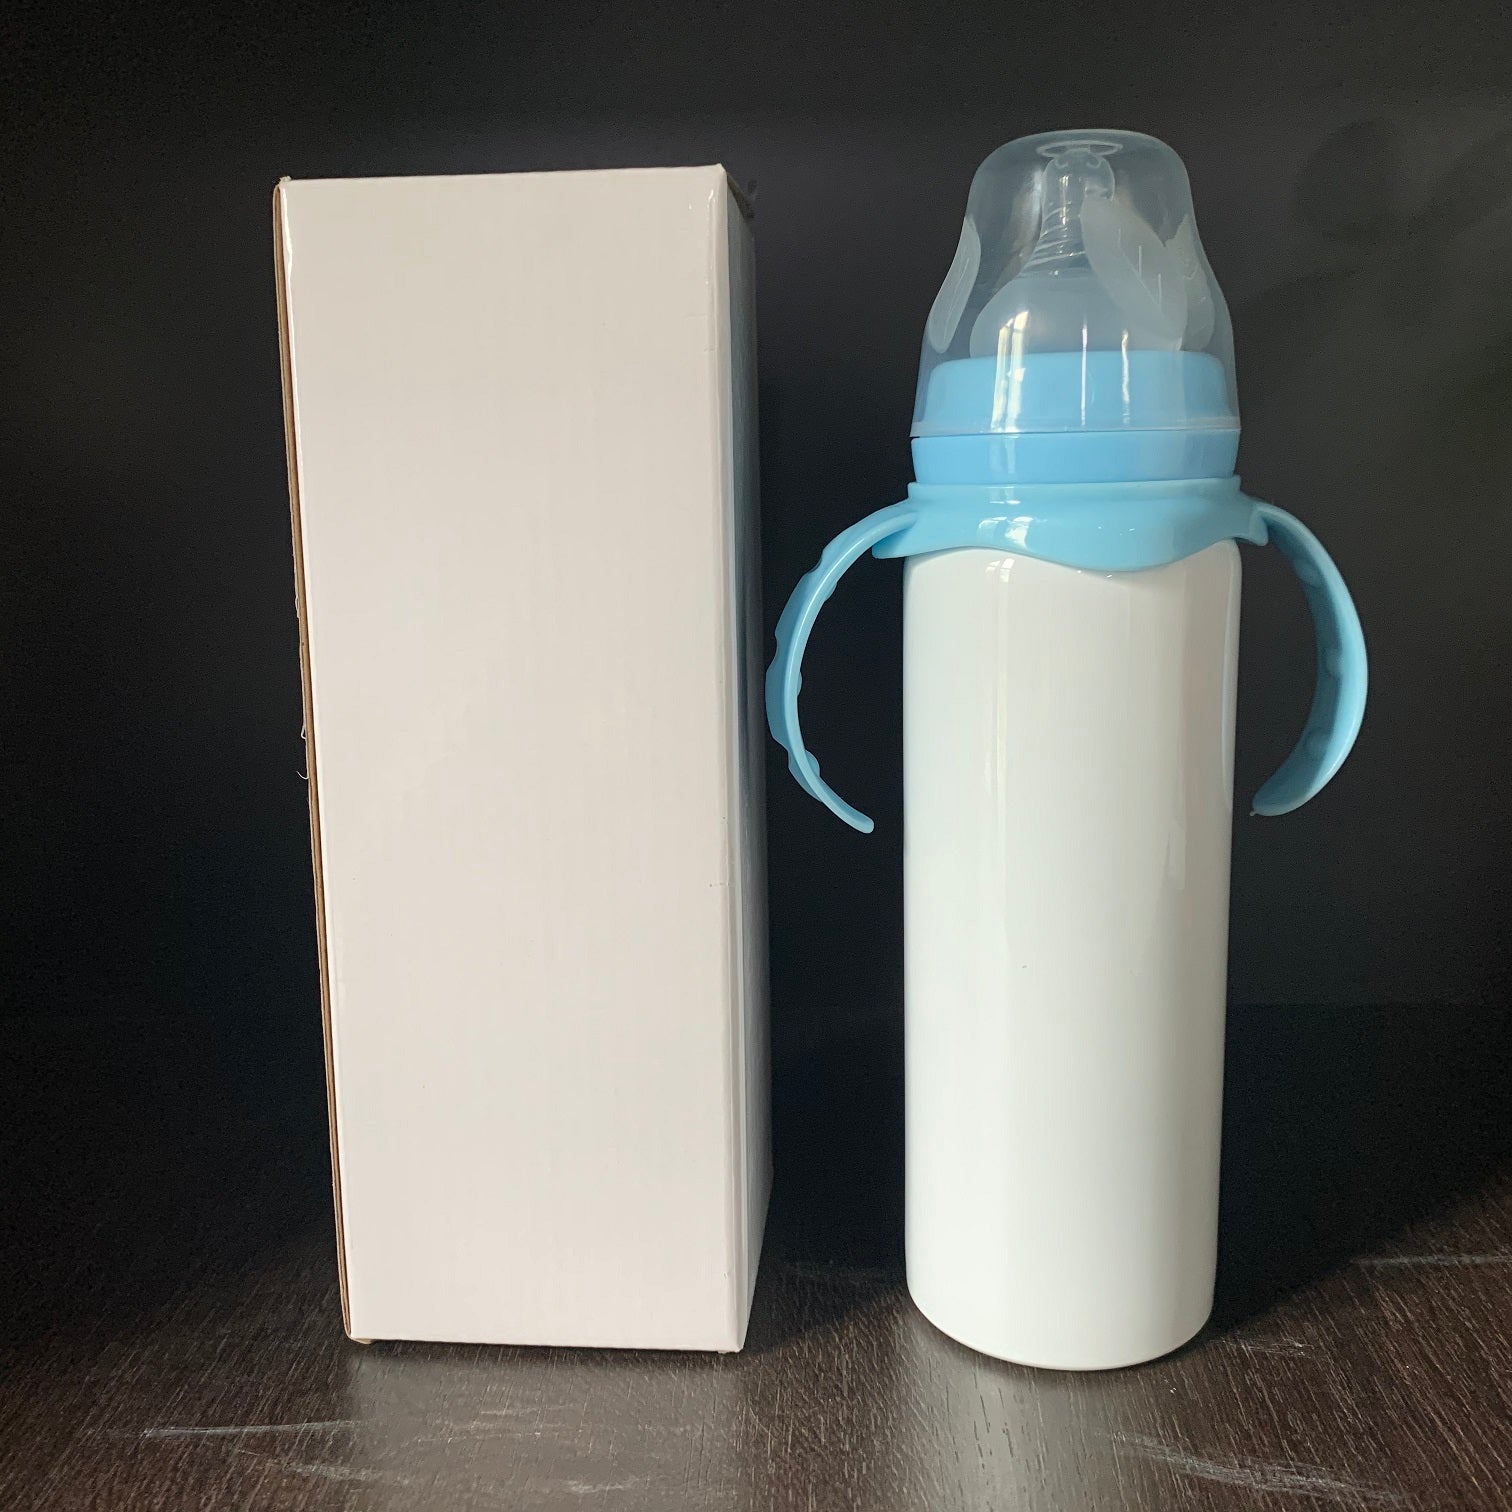 Wholesale 25 oz. Stainless Steel Grip Water Bottle | Metal Water Bottles |  Order Blank